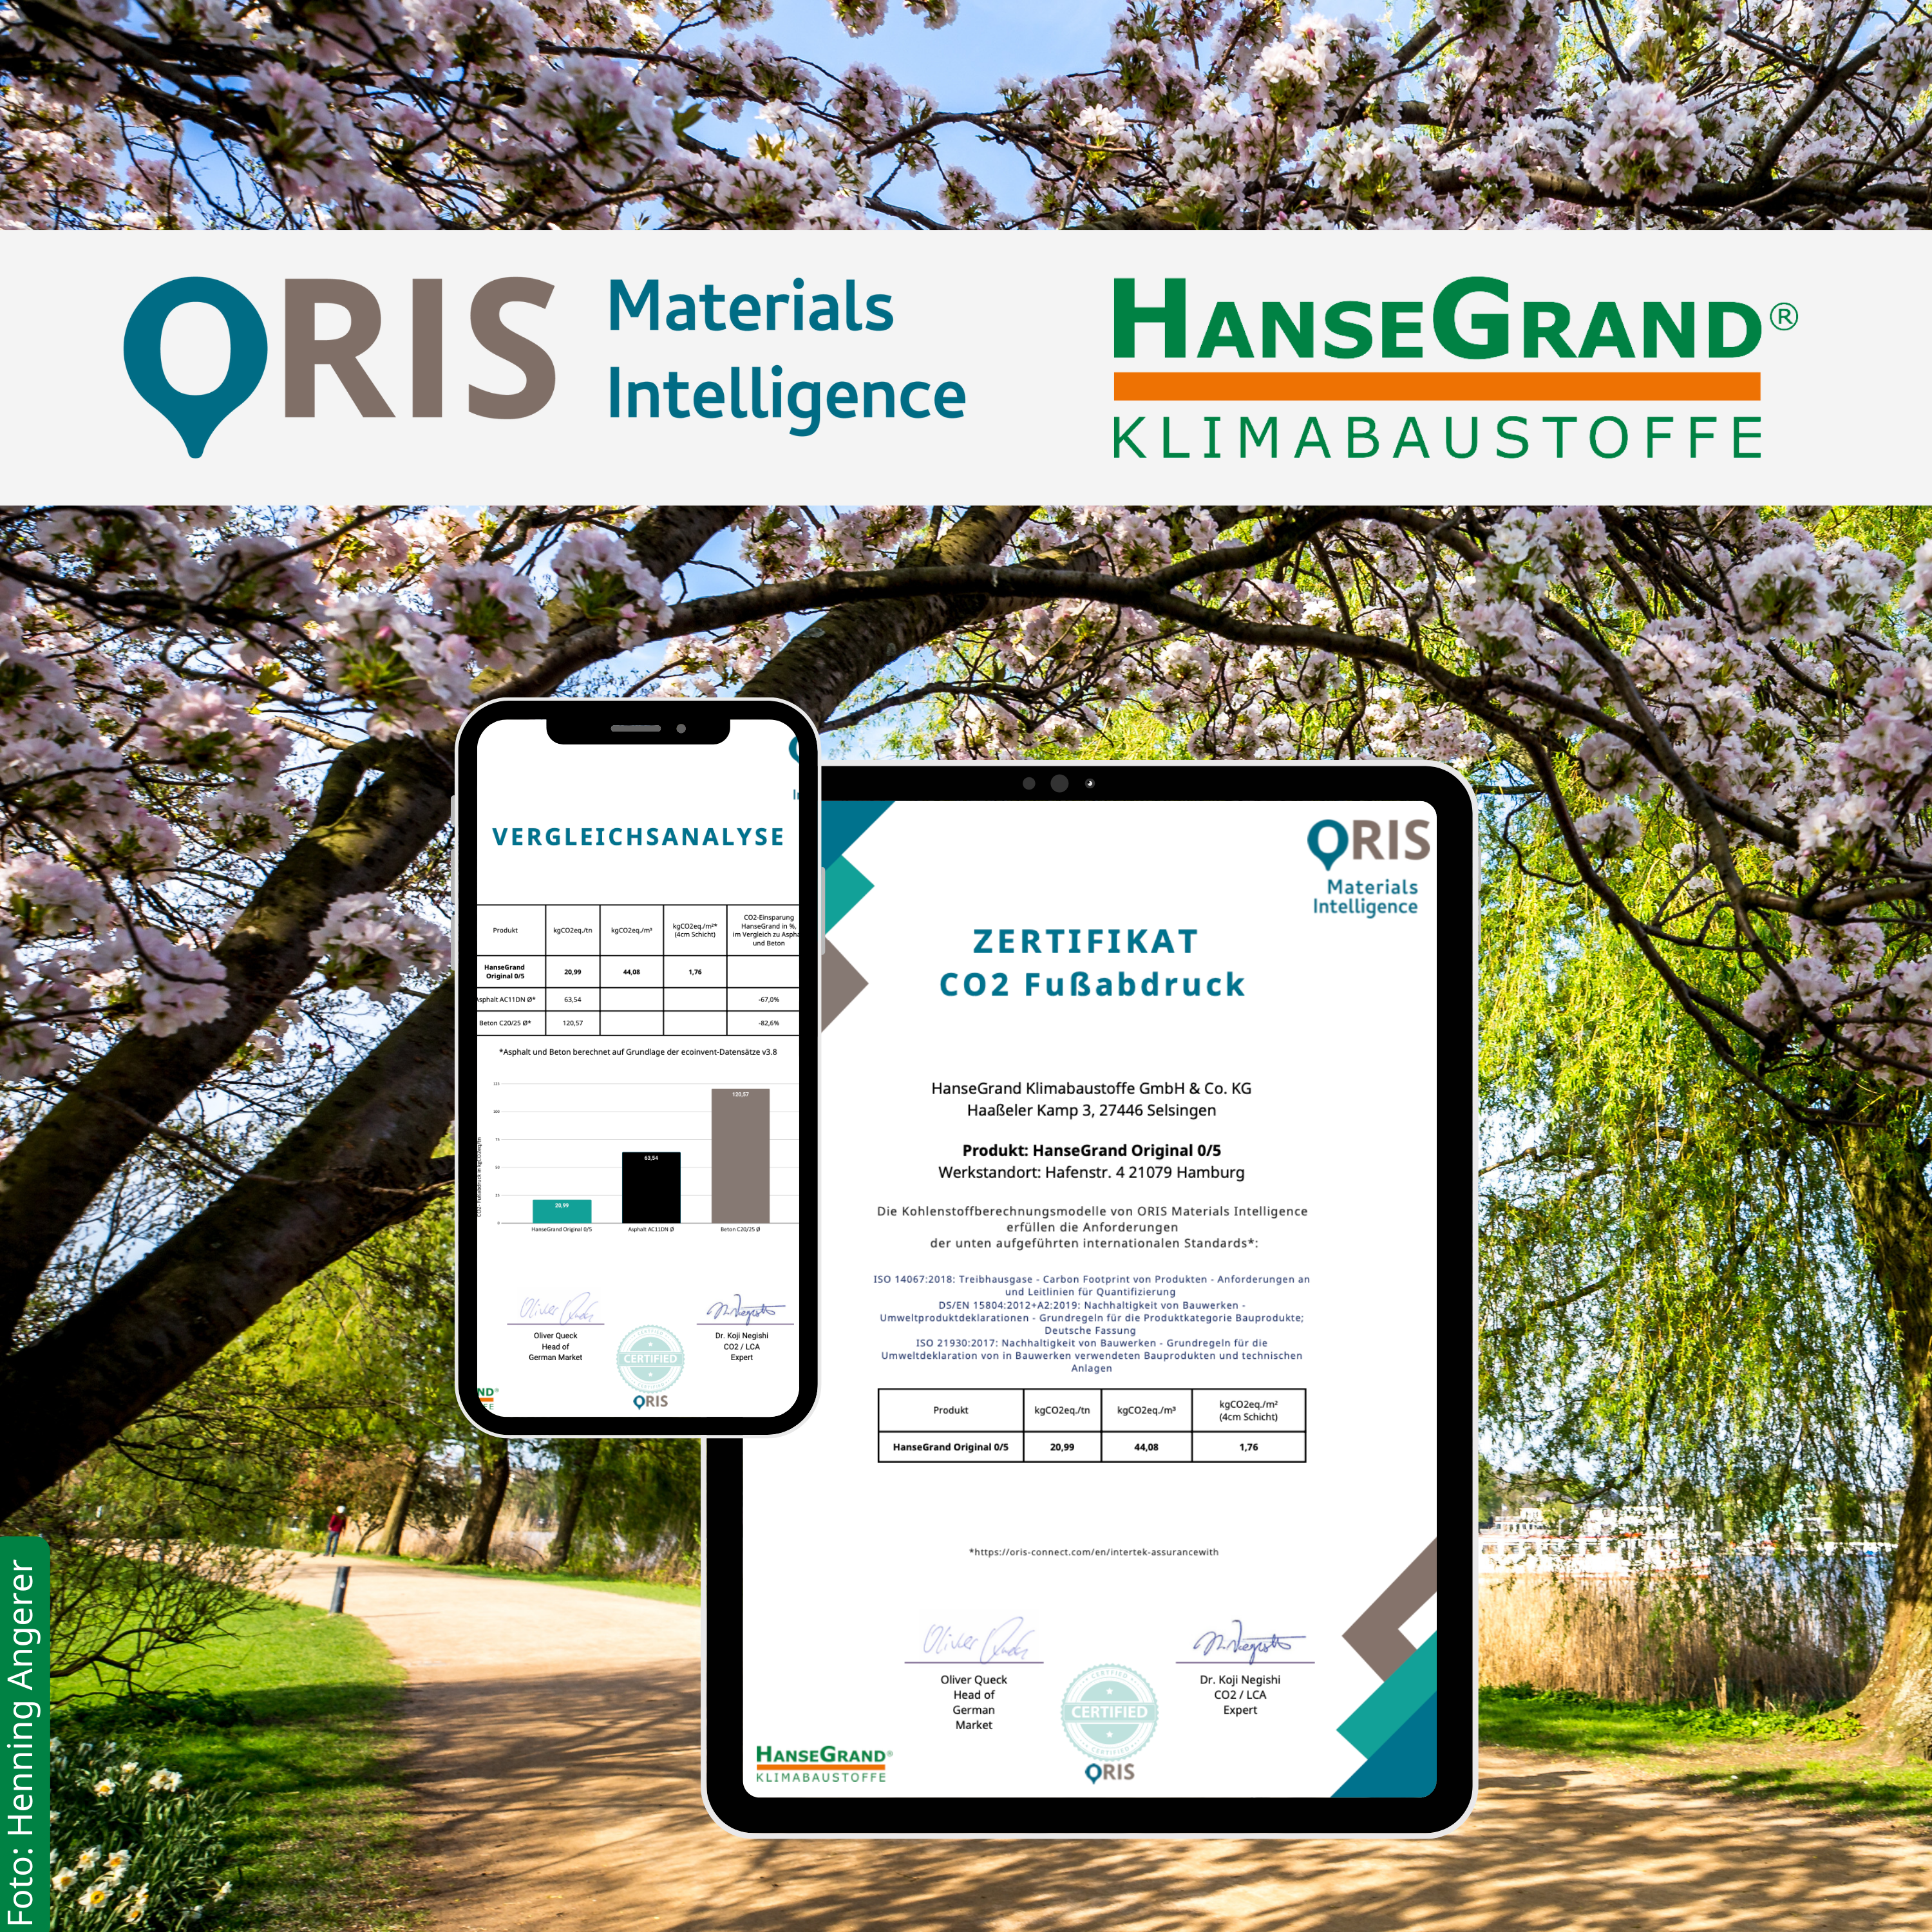 Les revêtements de sol de HanseGrand: faciles à entretenir, résistants aux intempéries, durables et désormais avec un impact CO2 mesuré par ORIS Materials Intelligence!